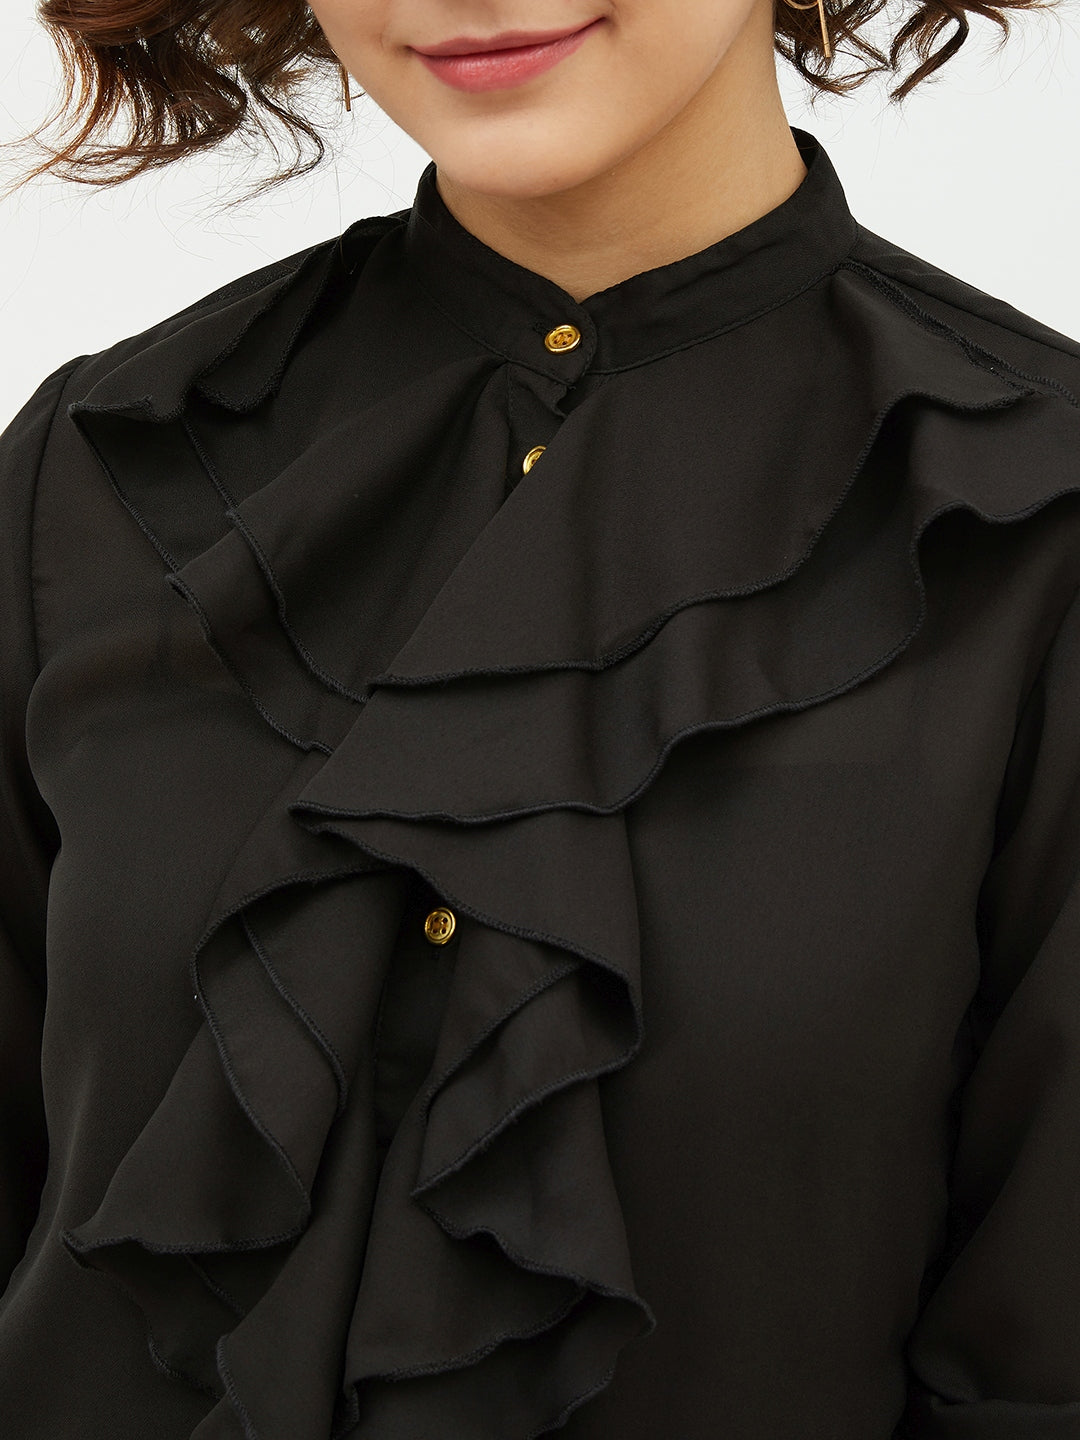 Women's Black Ruffle Polyester Moss Shirt - StyleStone